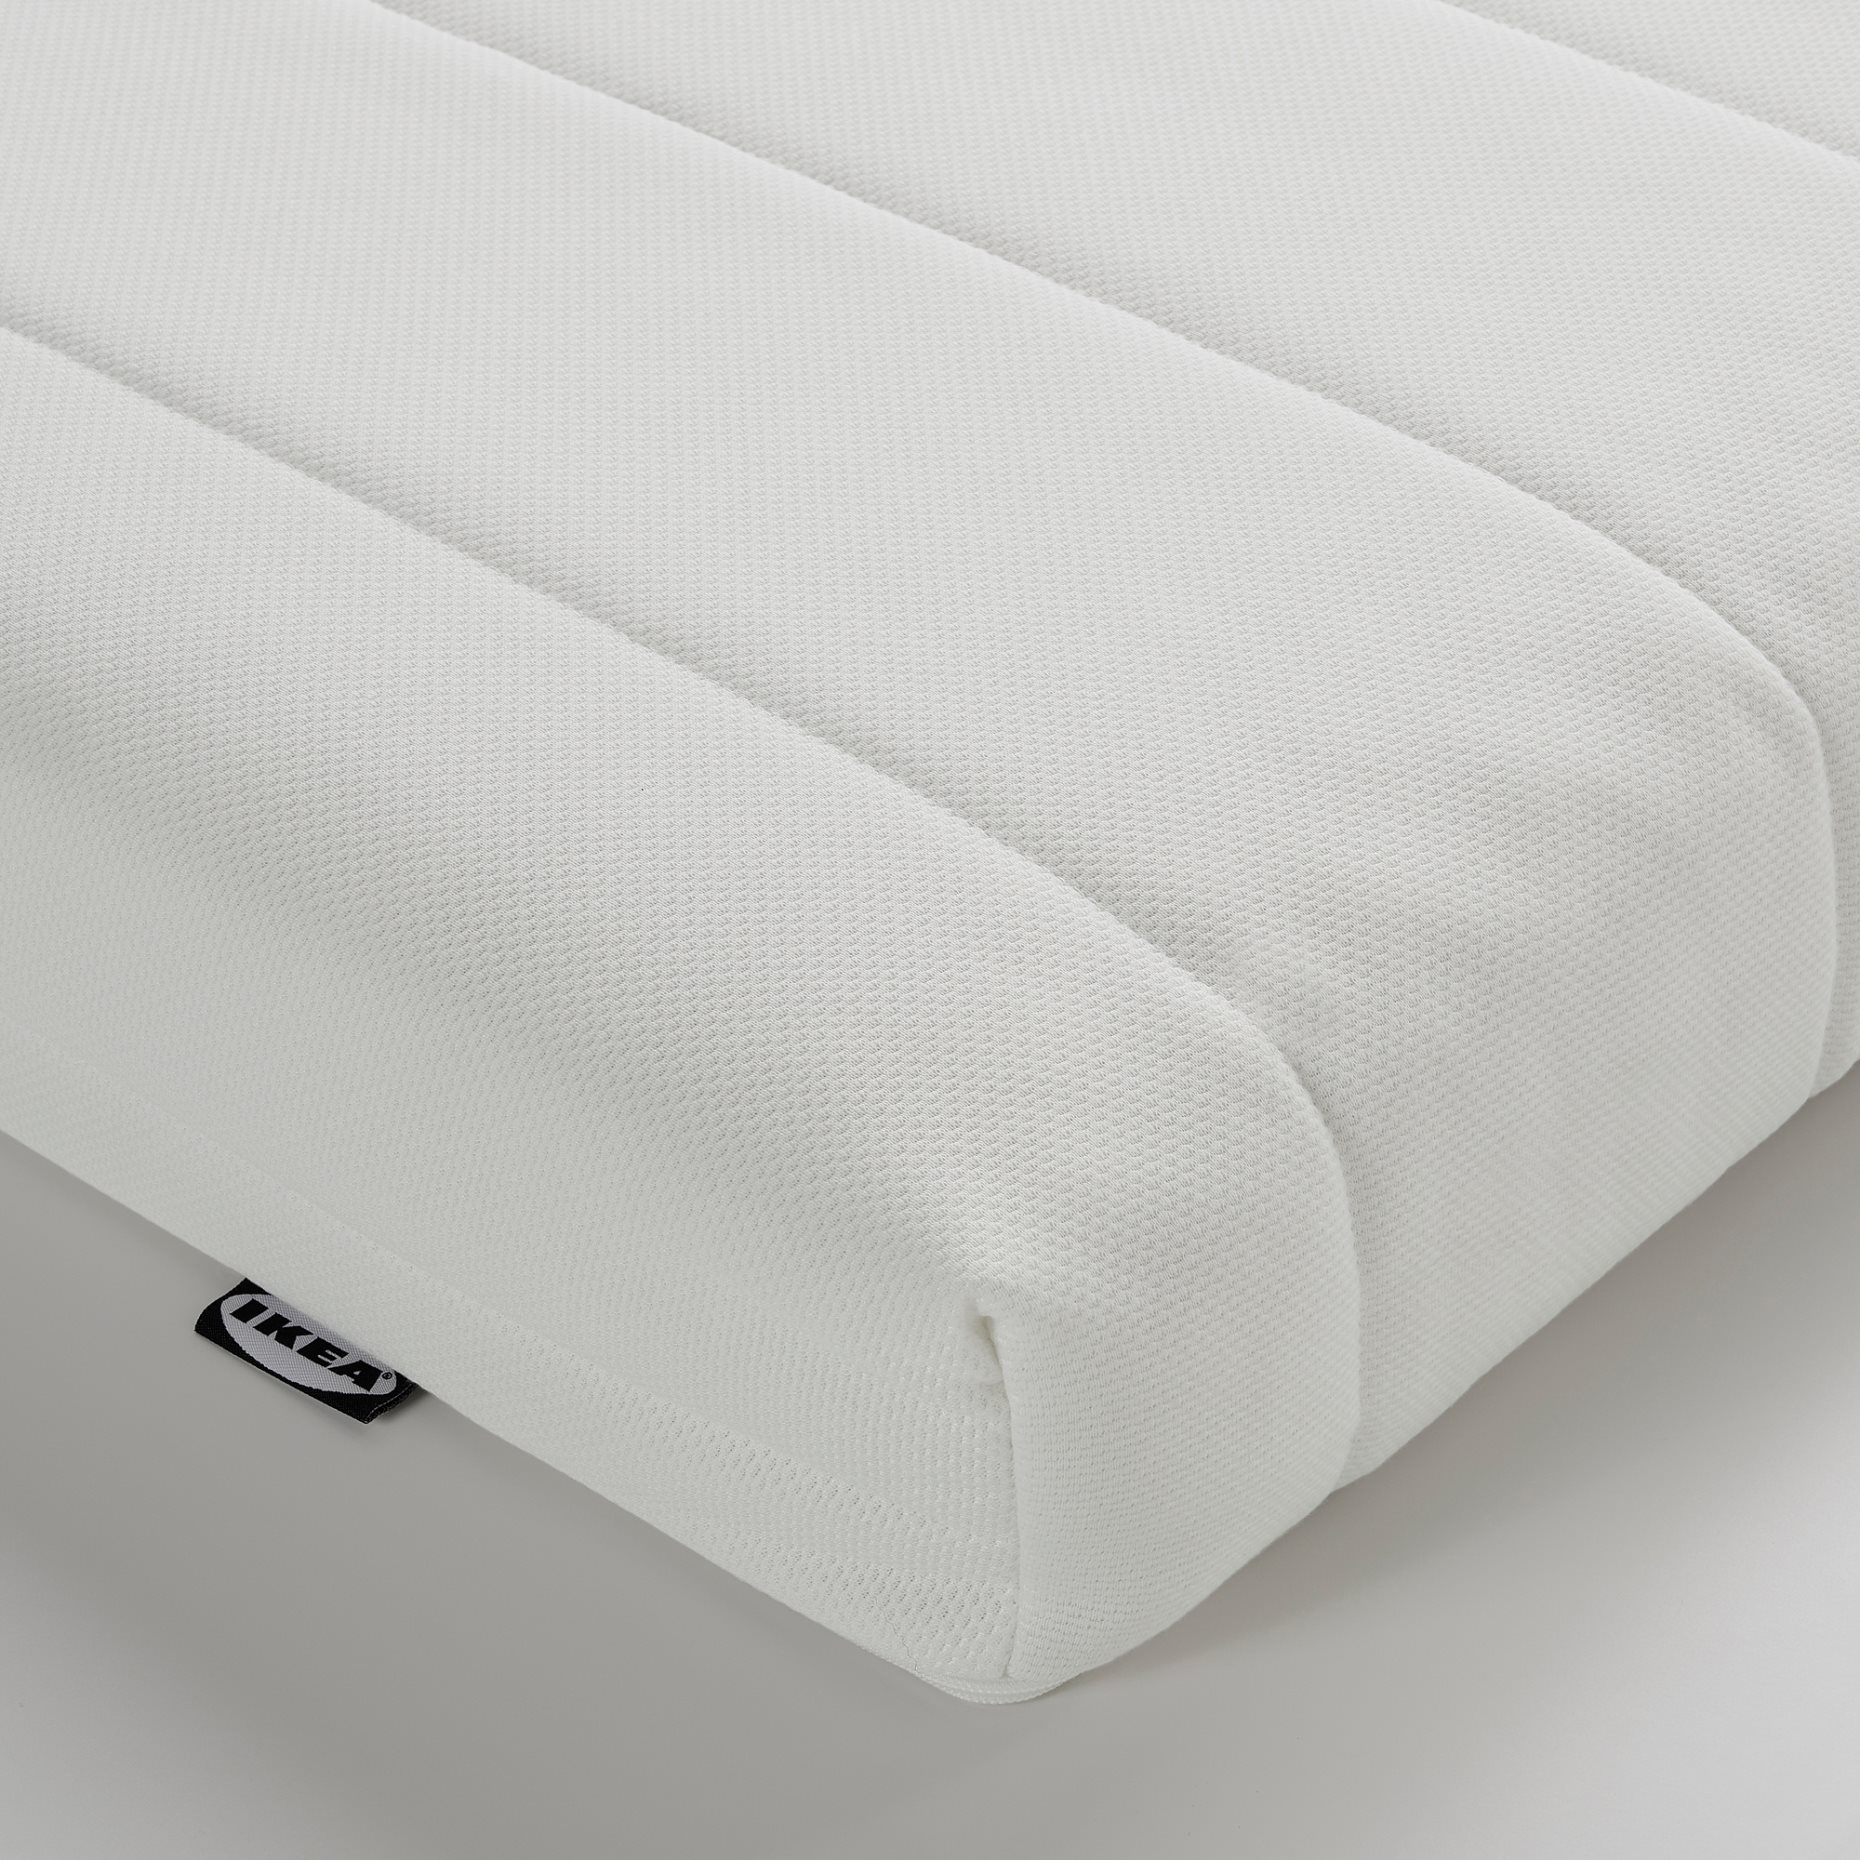 ÅFJÄLL, foam mattress/firm, 80x200 cm, 805.686.30